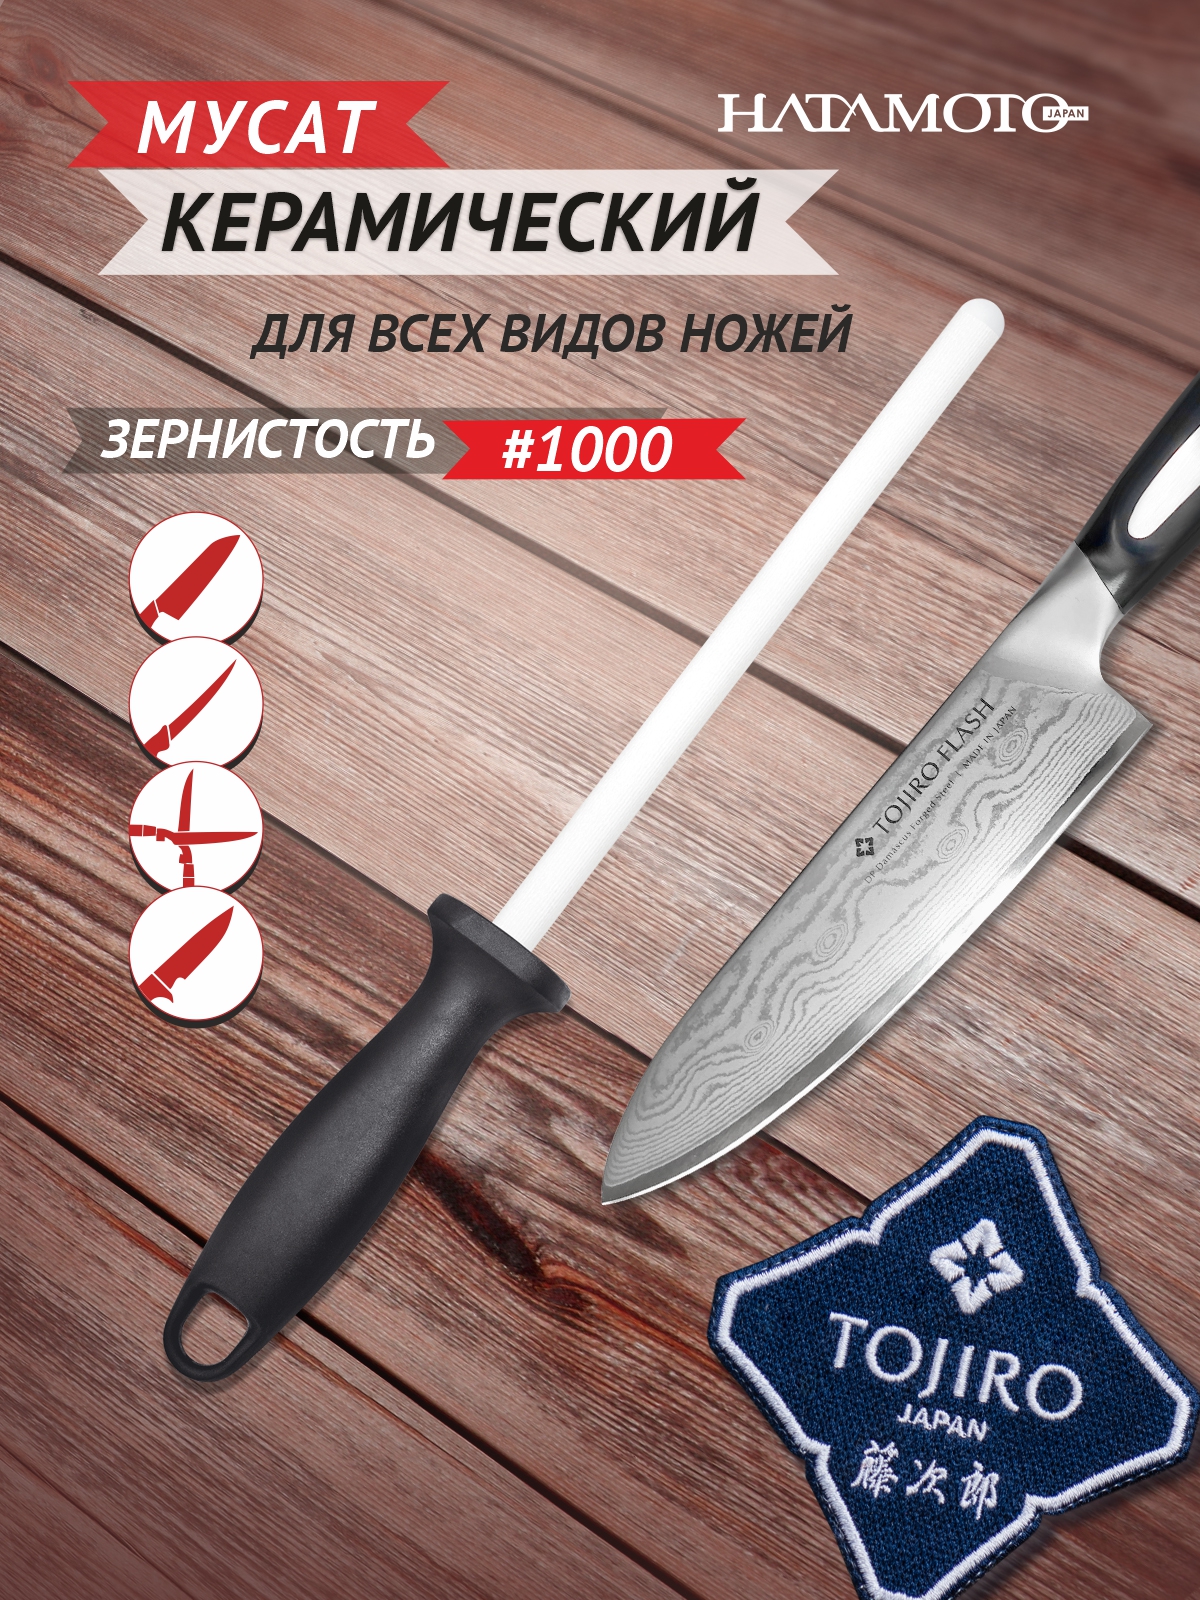 Мусат для правки ножей Hatamoto Japan, керамика HD-1230C - купить в ООО «Олдпайн», цена на Мегамаркет